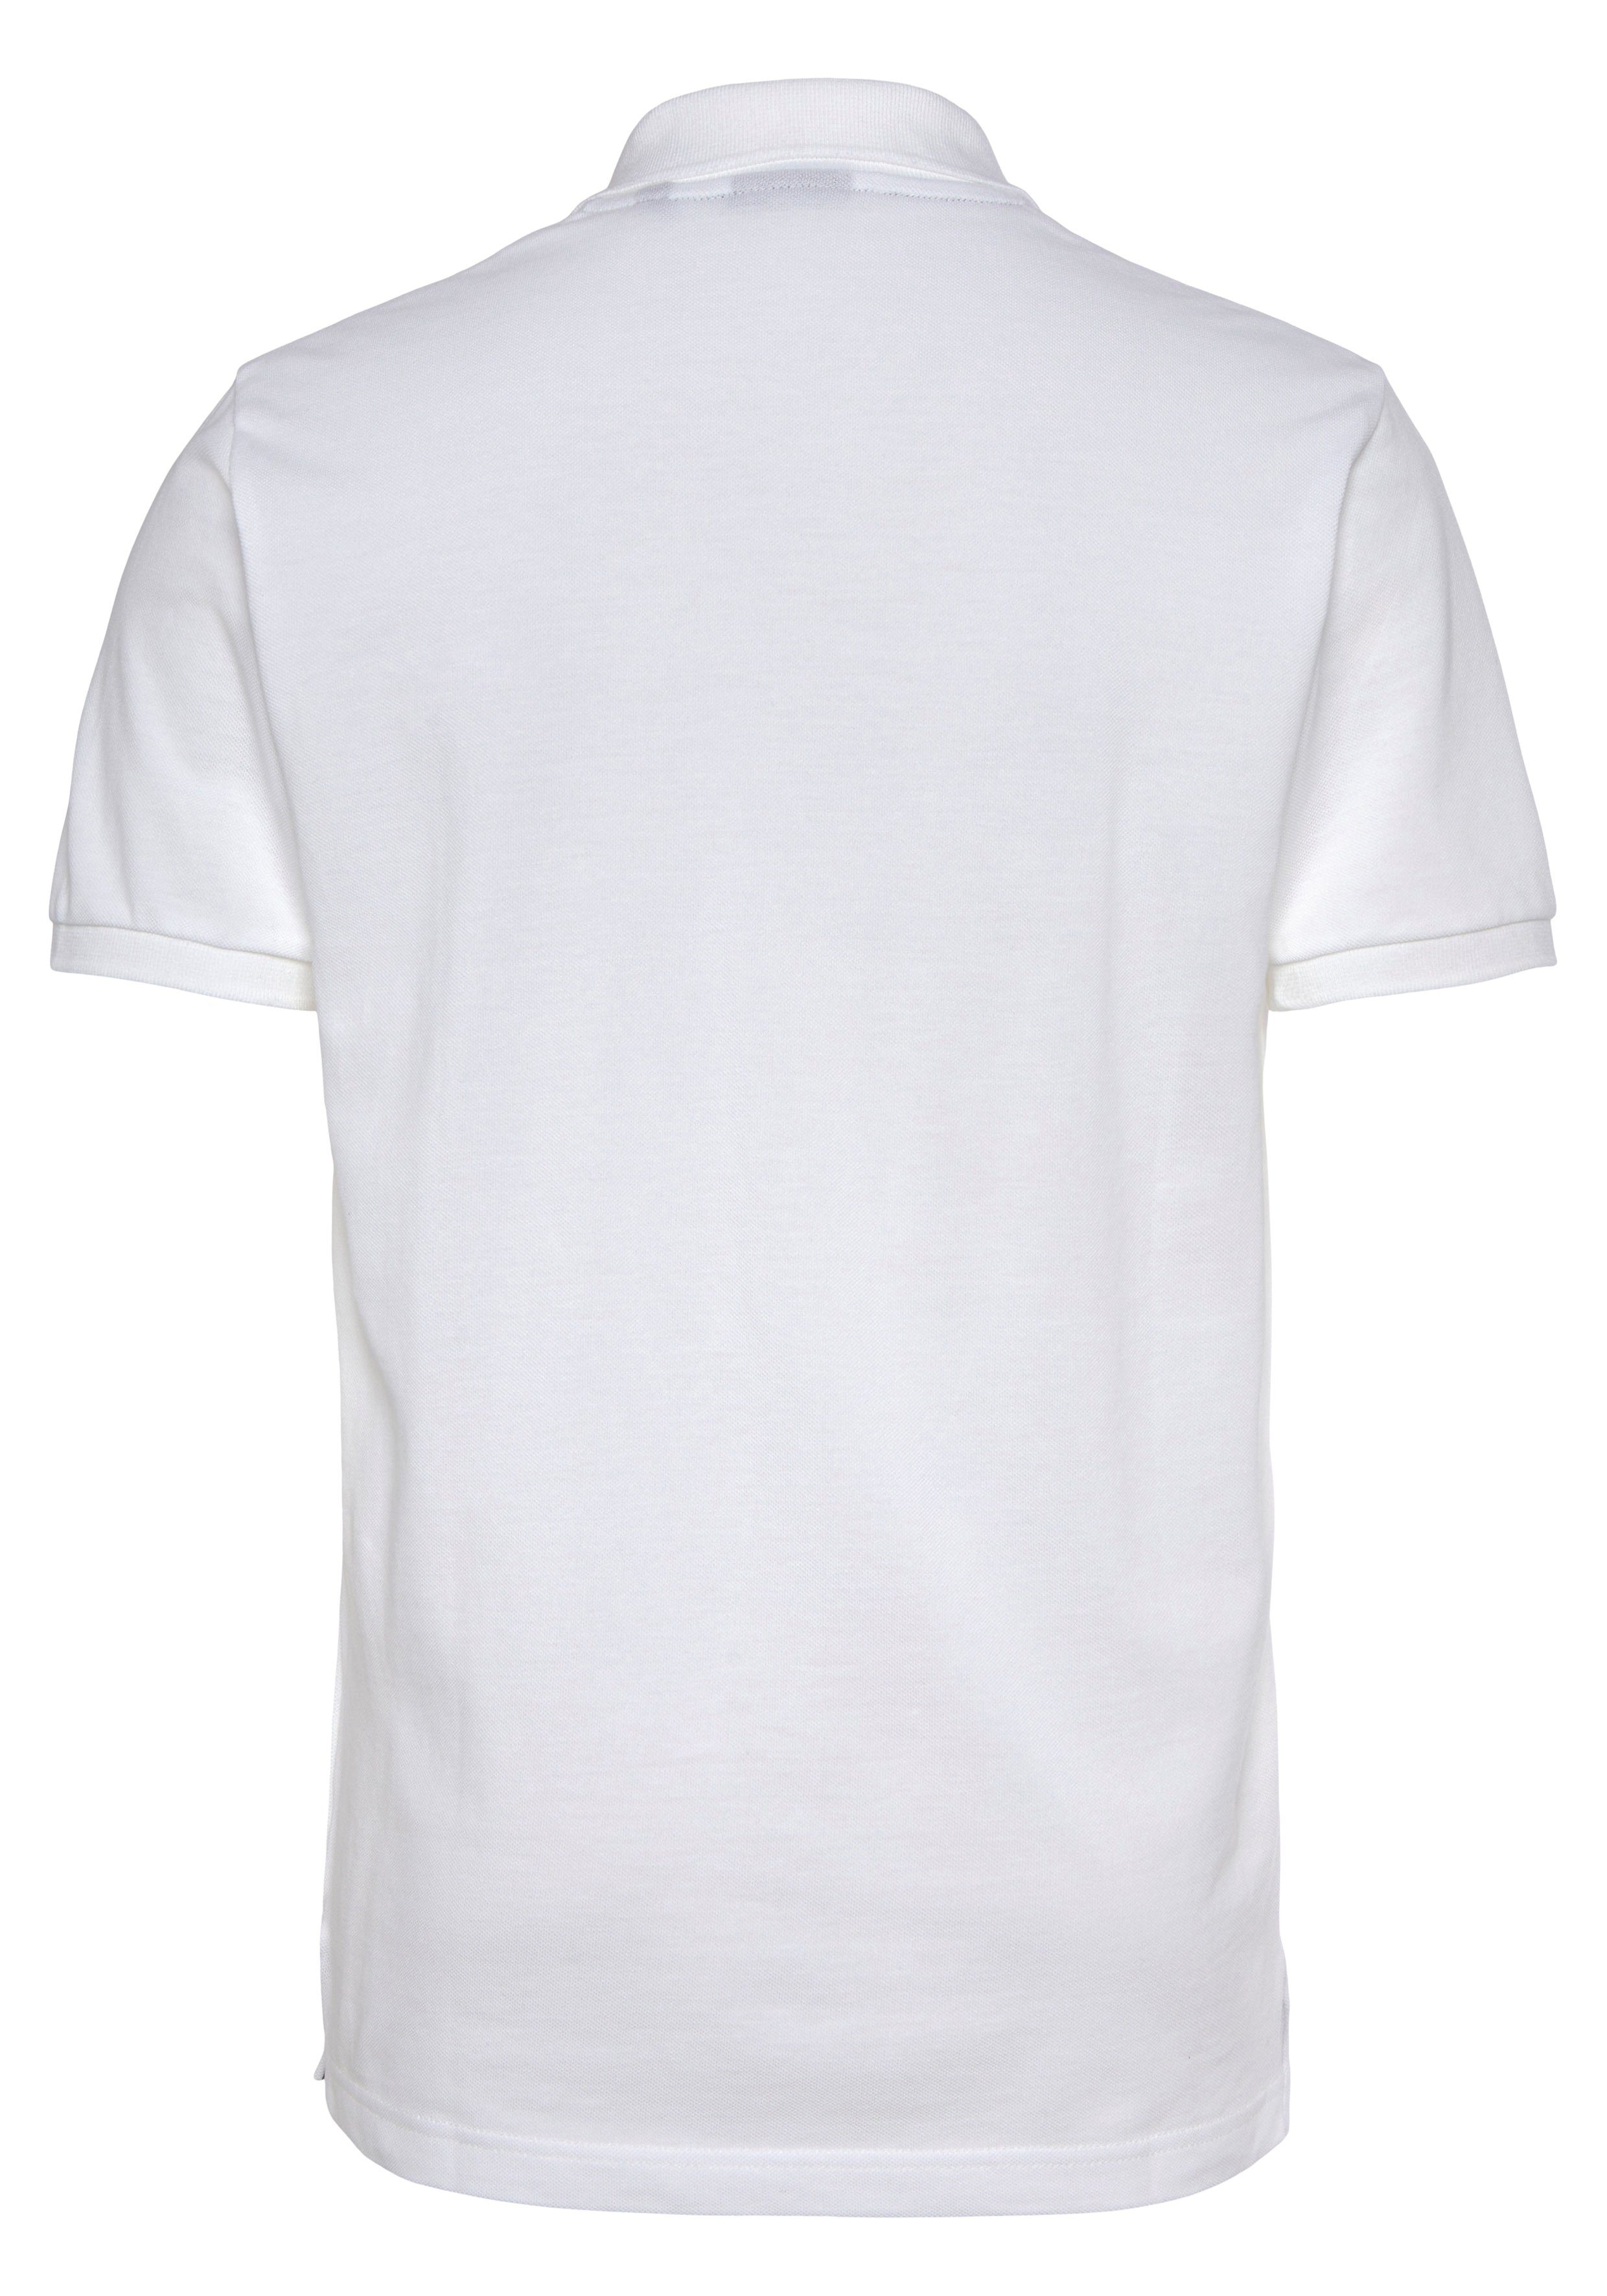 Gant Poloshirt MD. KA PIQUE RUGGER weiß Smart Shirt, Regular Qualität Piqué-Polo Premium Casual, Fit